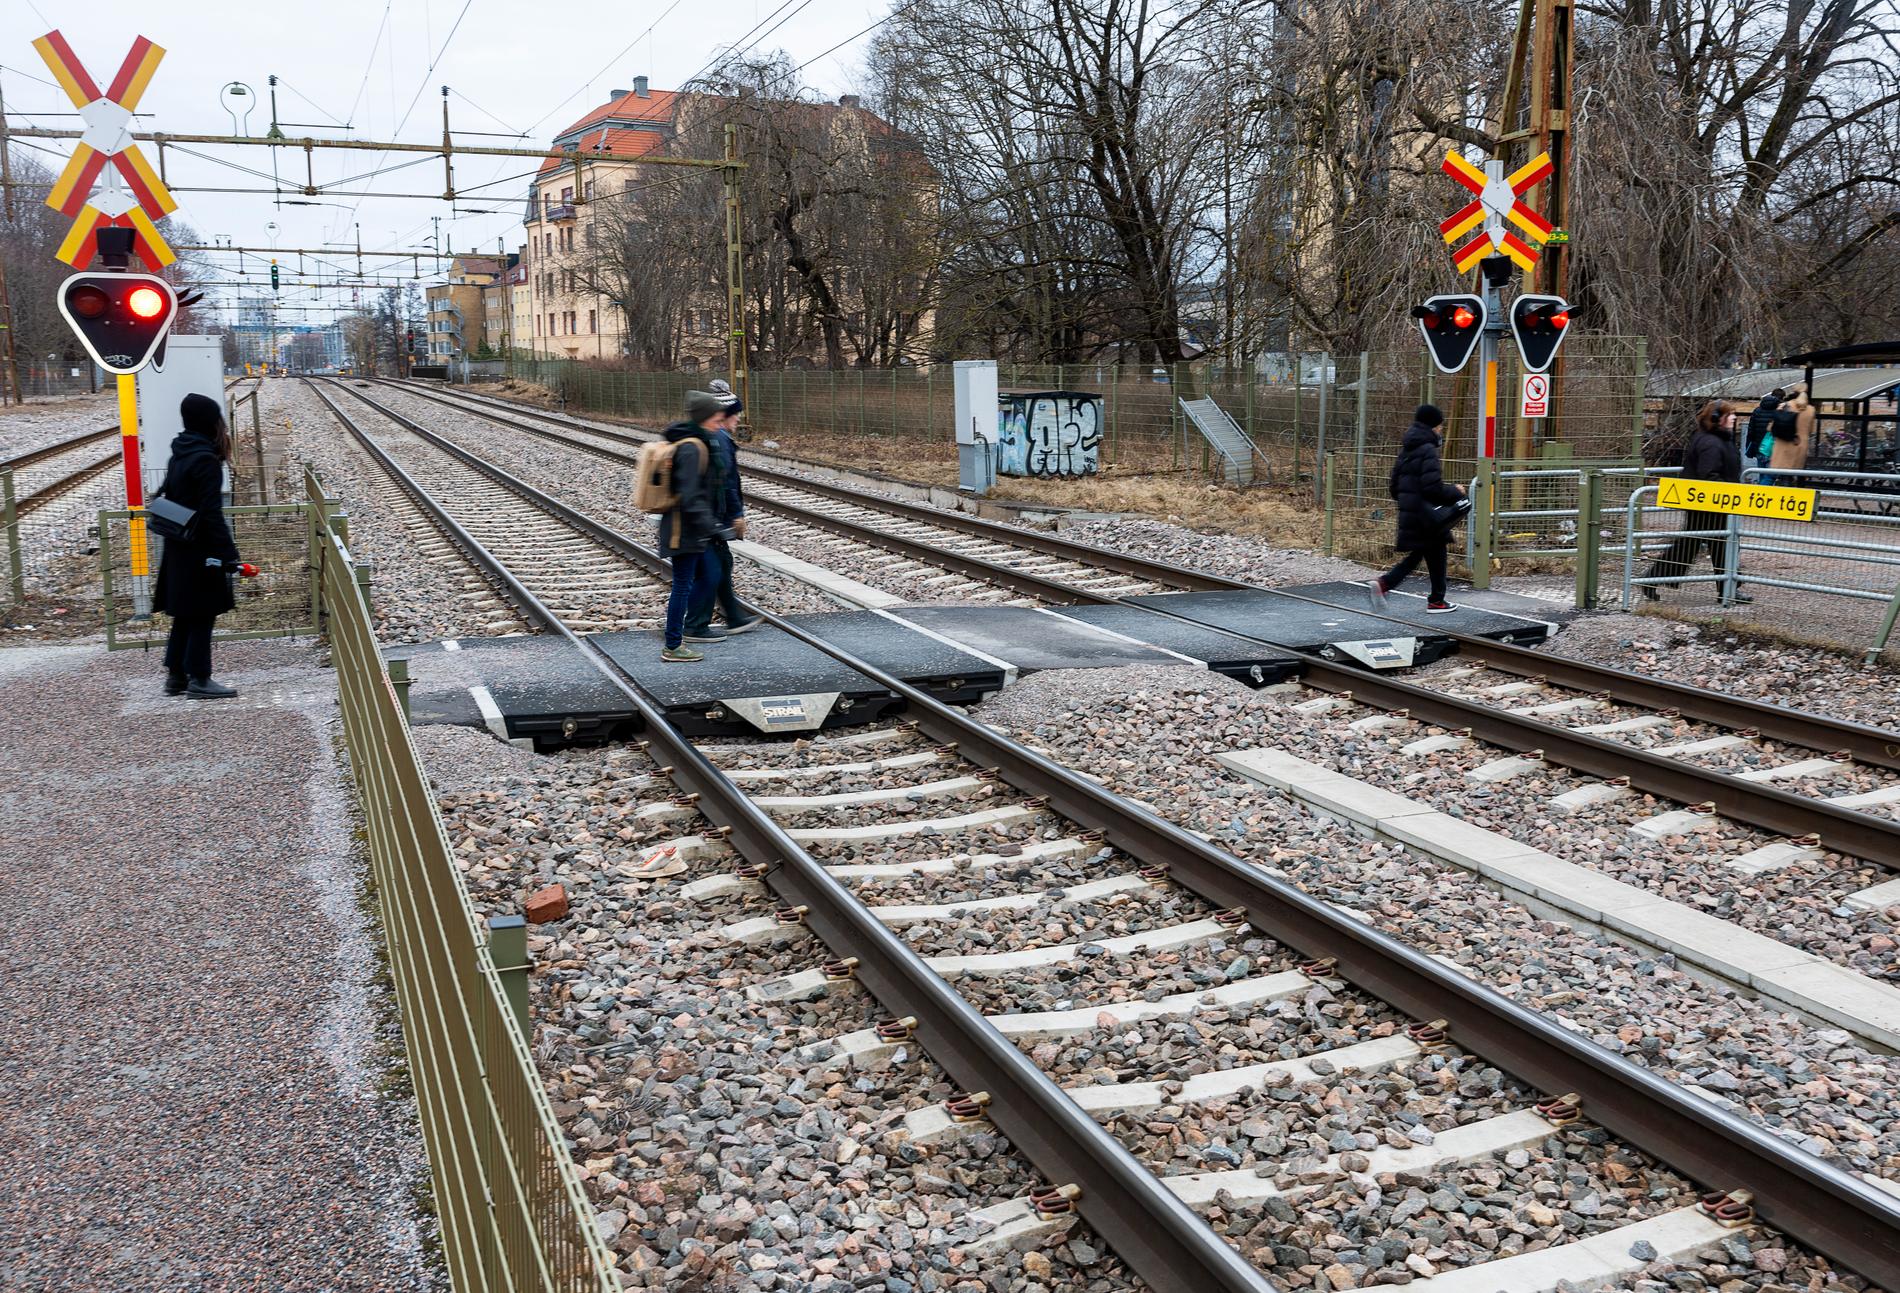 Örebro station har varit olycksdrabbad. Den 28 februari i år dog tragiskt tre personer som blev påkörda. Bilden från platsen togs dagen efter.